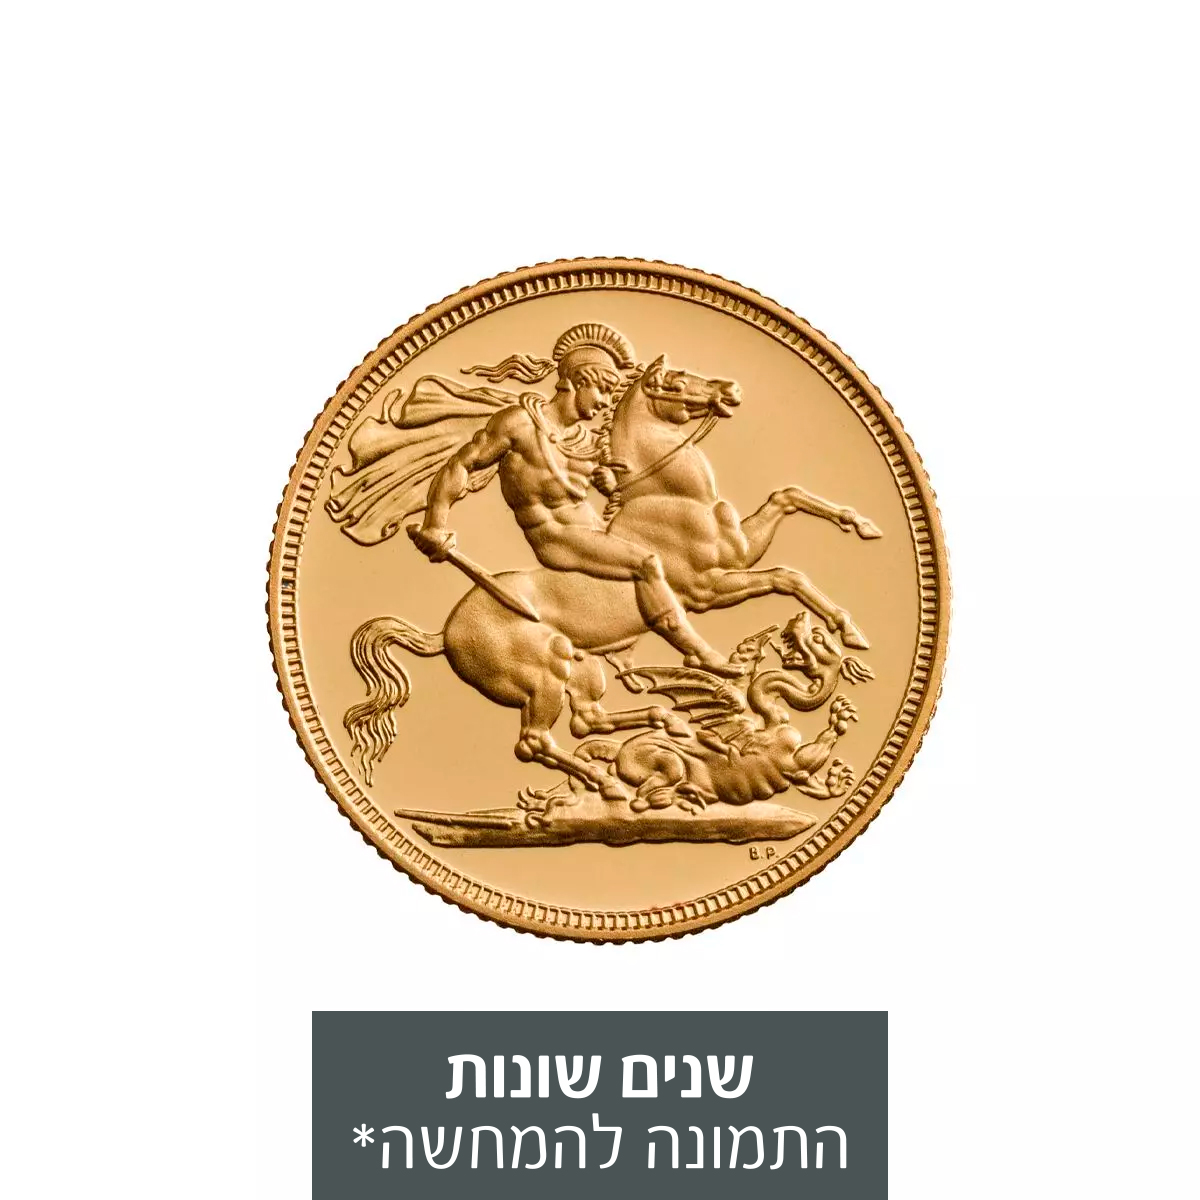 מטבע זהב סוברין (אליזבת השנייה - פורטרט שני)